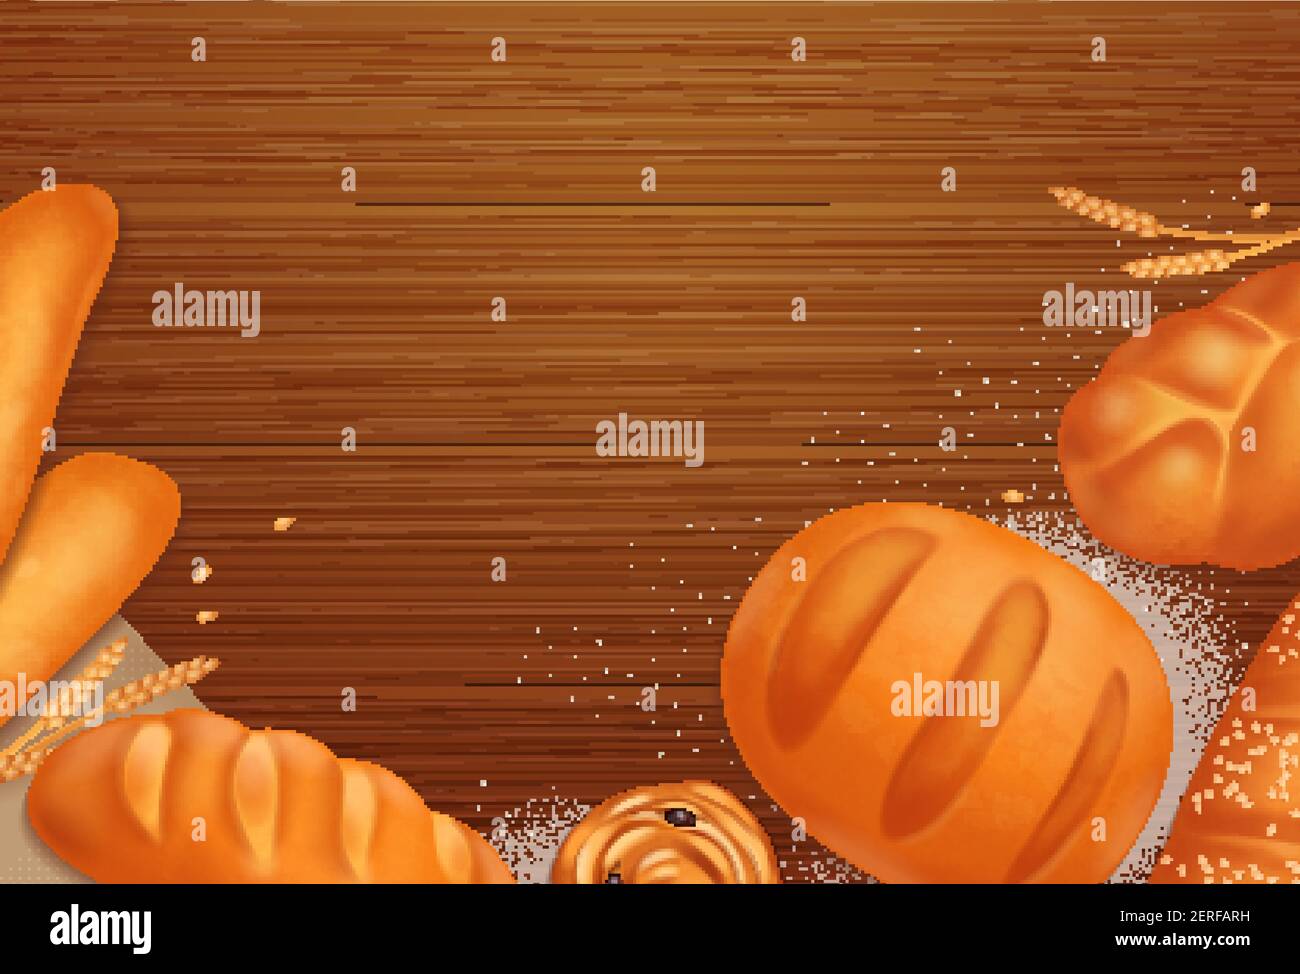 Panificio marrone sfondo realistico con diversi gusti di pane e buns illustrazione vettoriale Illustrazione Vettoriale